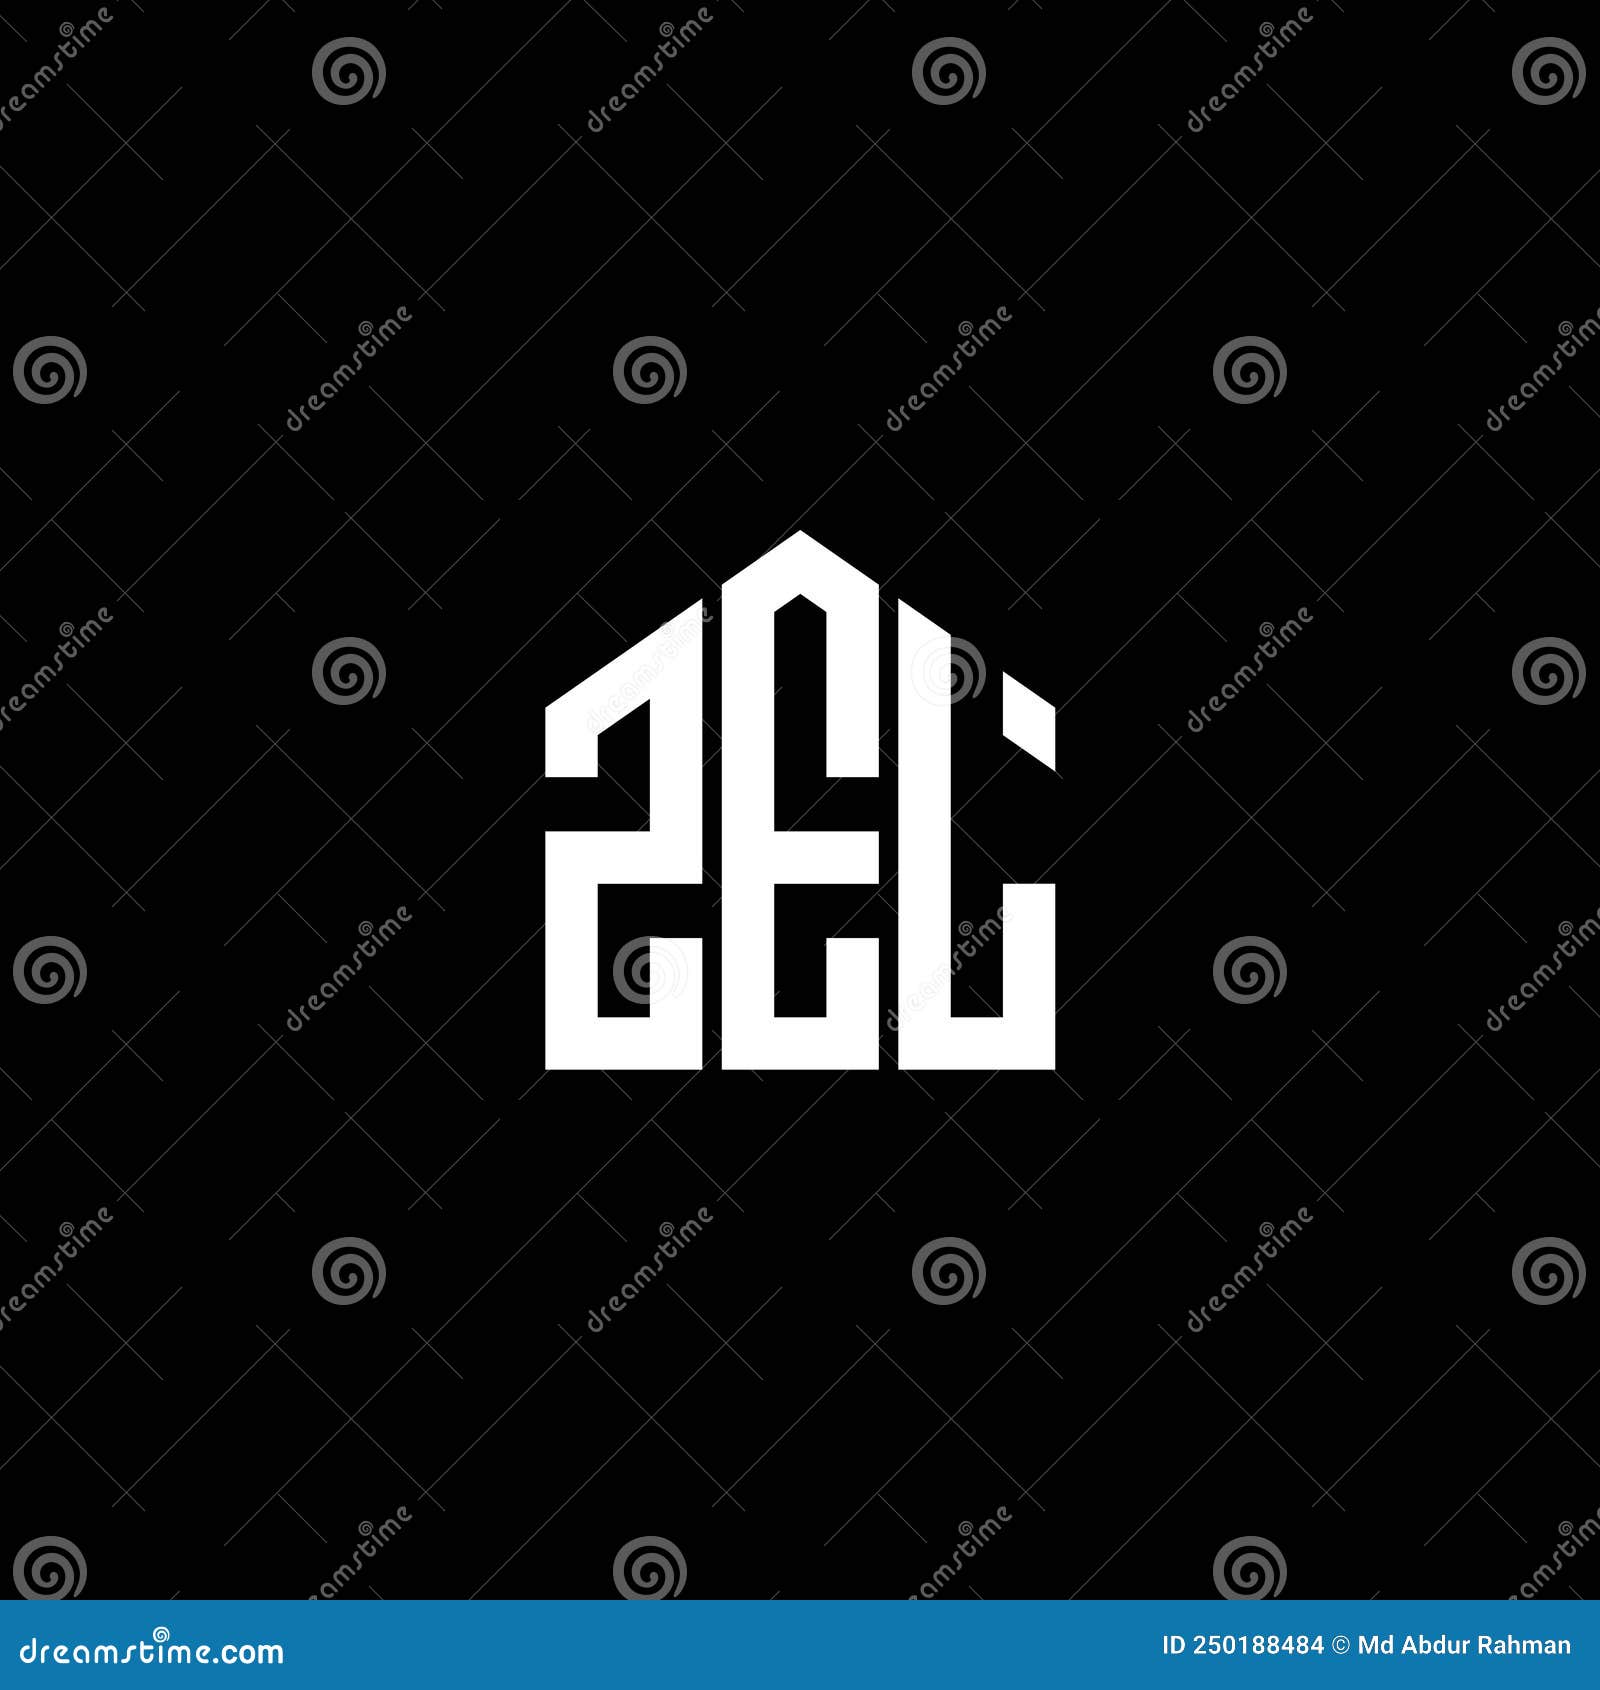 zel letter logo  on black background. zel creative initials letter logo concept. zel letter 